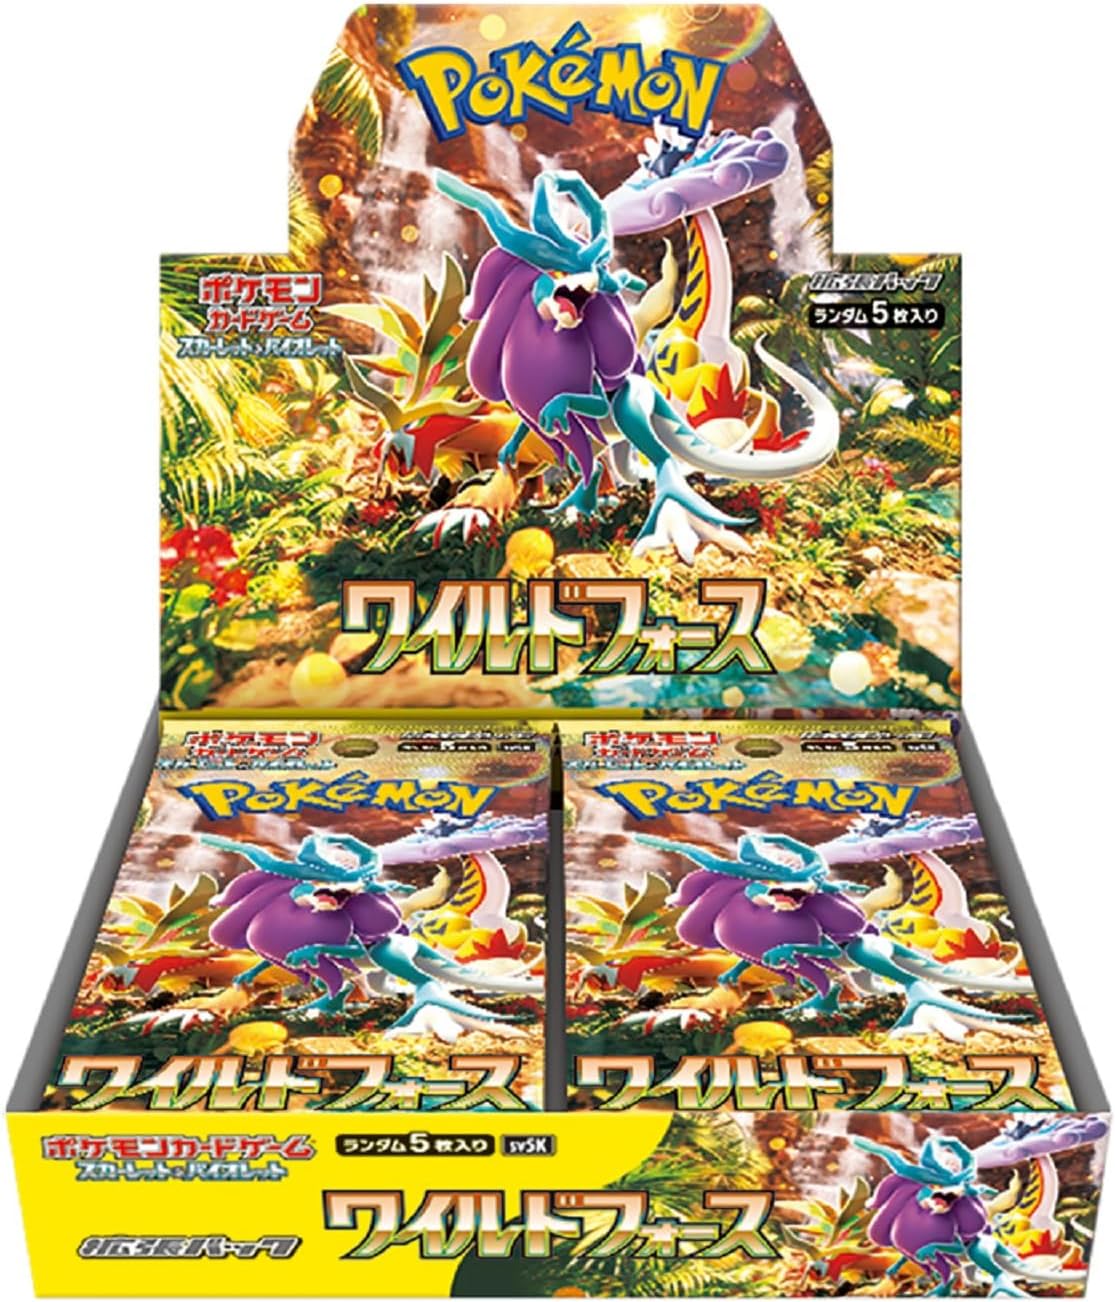 Pokémon Card Game Scarlet & Violet Expansion Pack Wild Force BOX